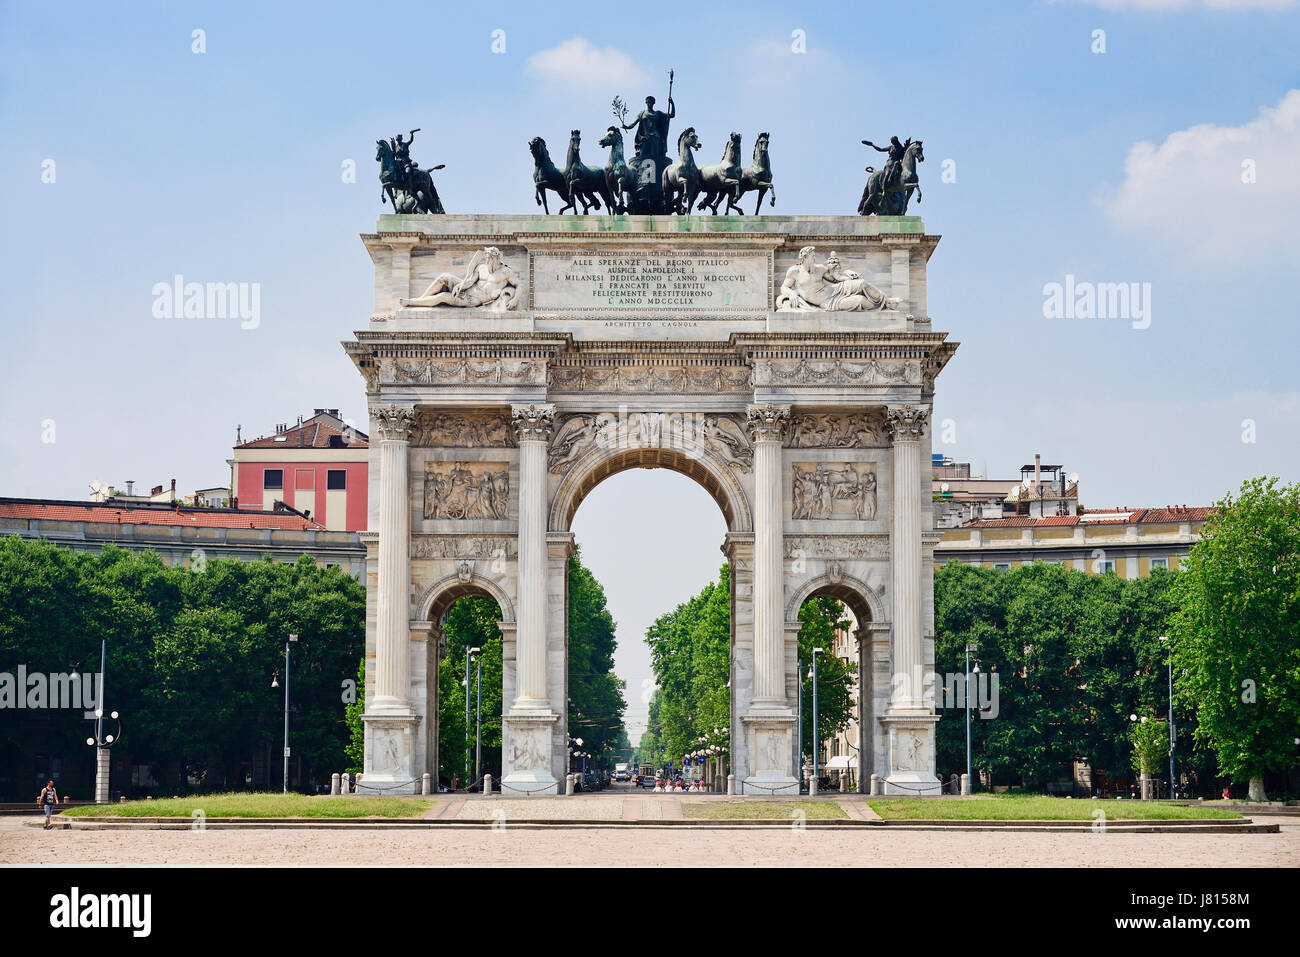 Italy, Lombardy, Milan. Arco della Pace at Porta Sempione. Stock Photo